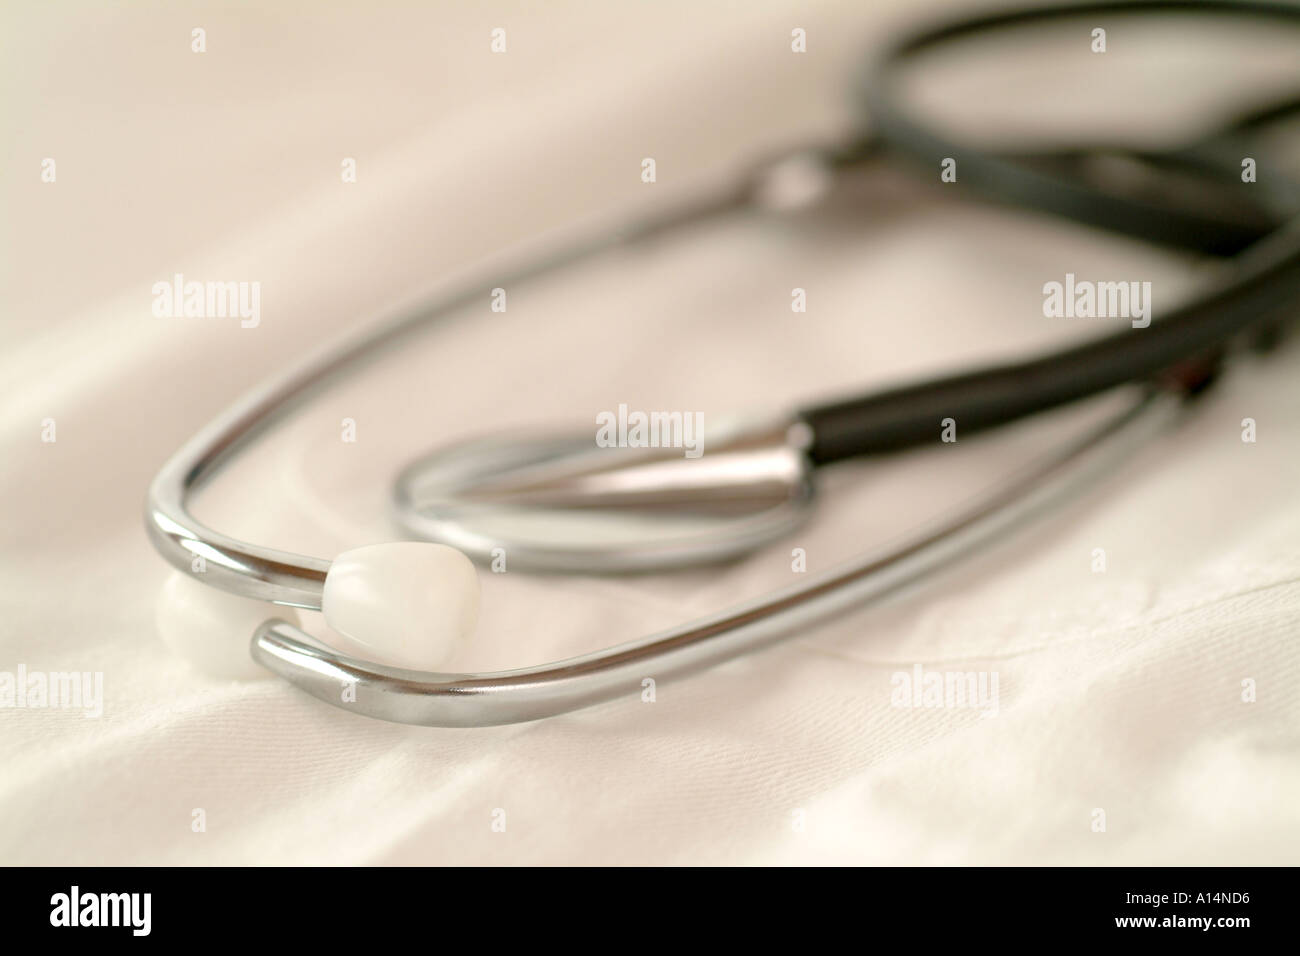 praxisgeb hr zuzahlung neuverordnung krankenkassen gesundheitsreform stethoskop untersuchung beim arzt Stock Photo